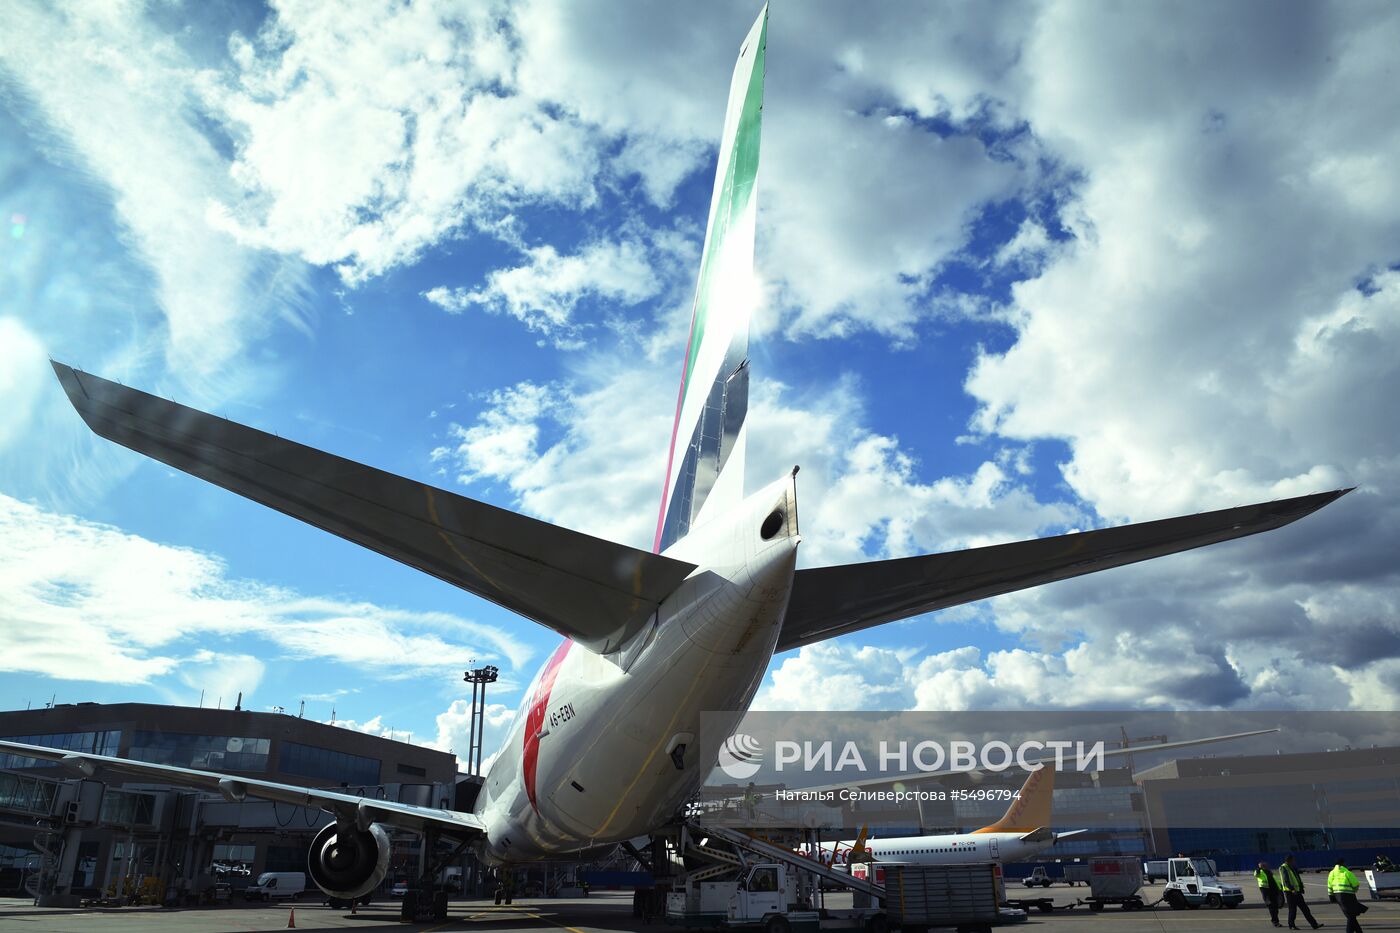 Самолет авиакомпании Emirates